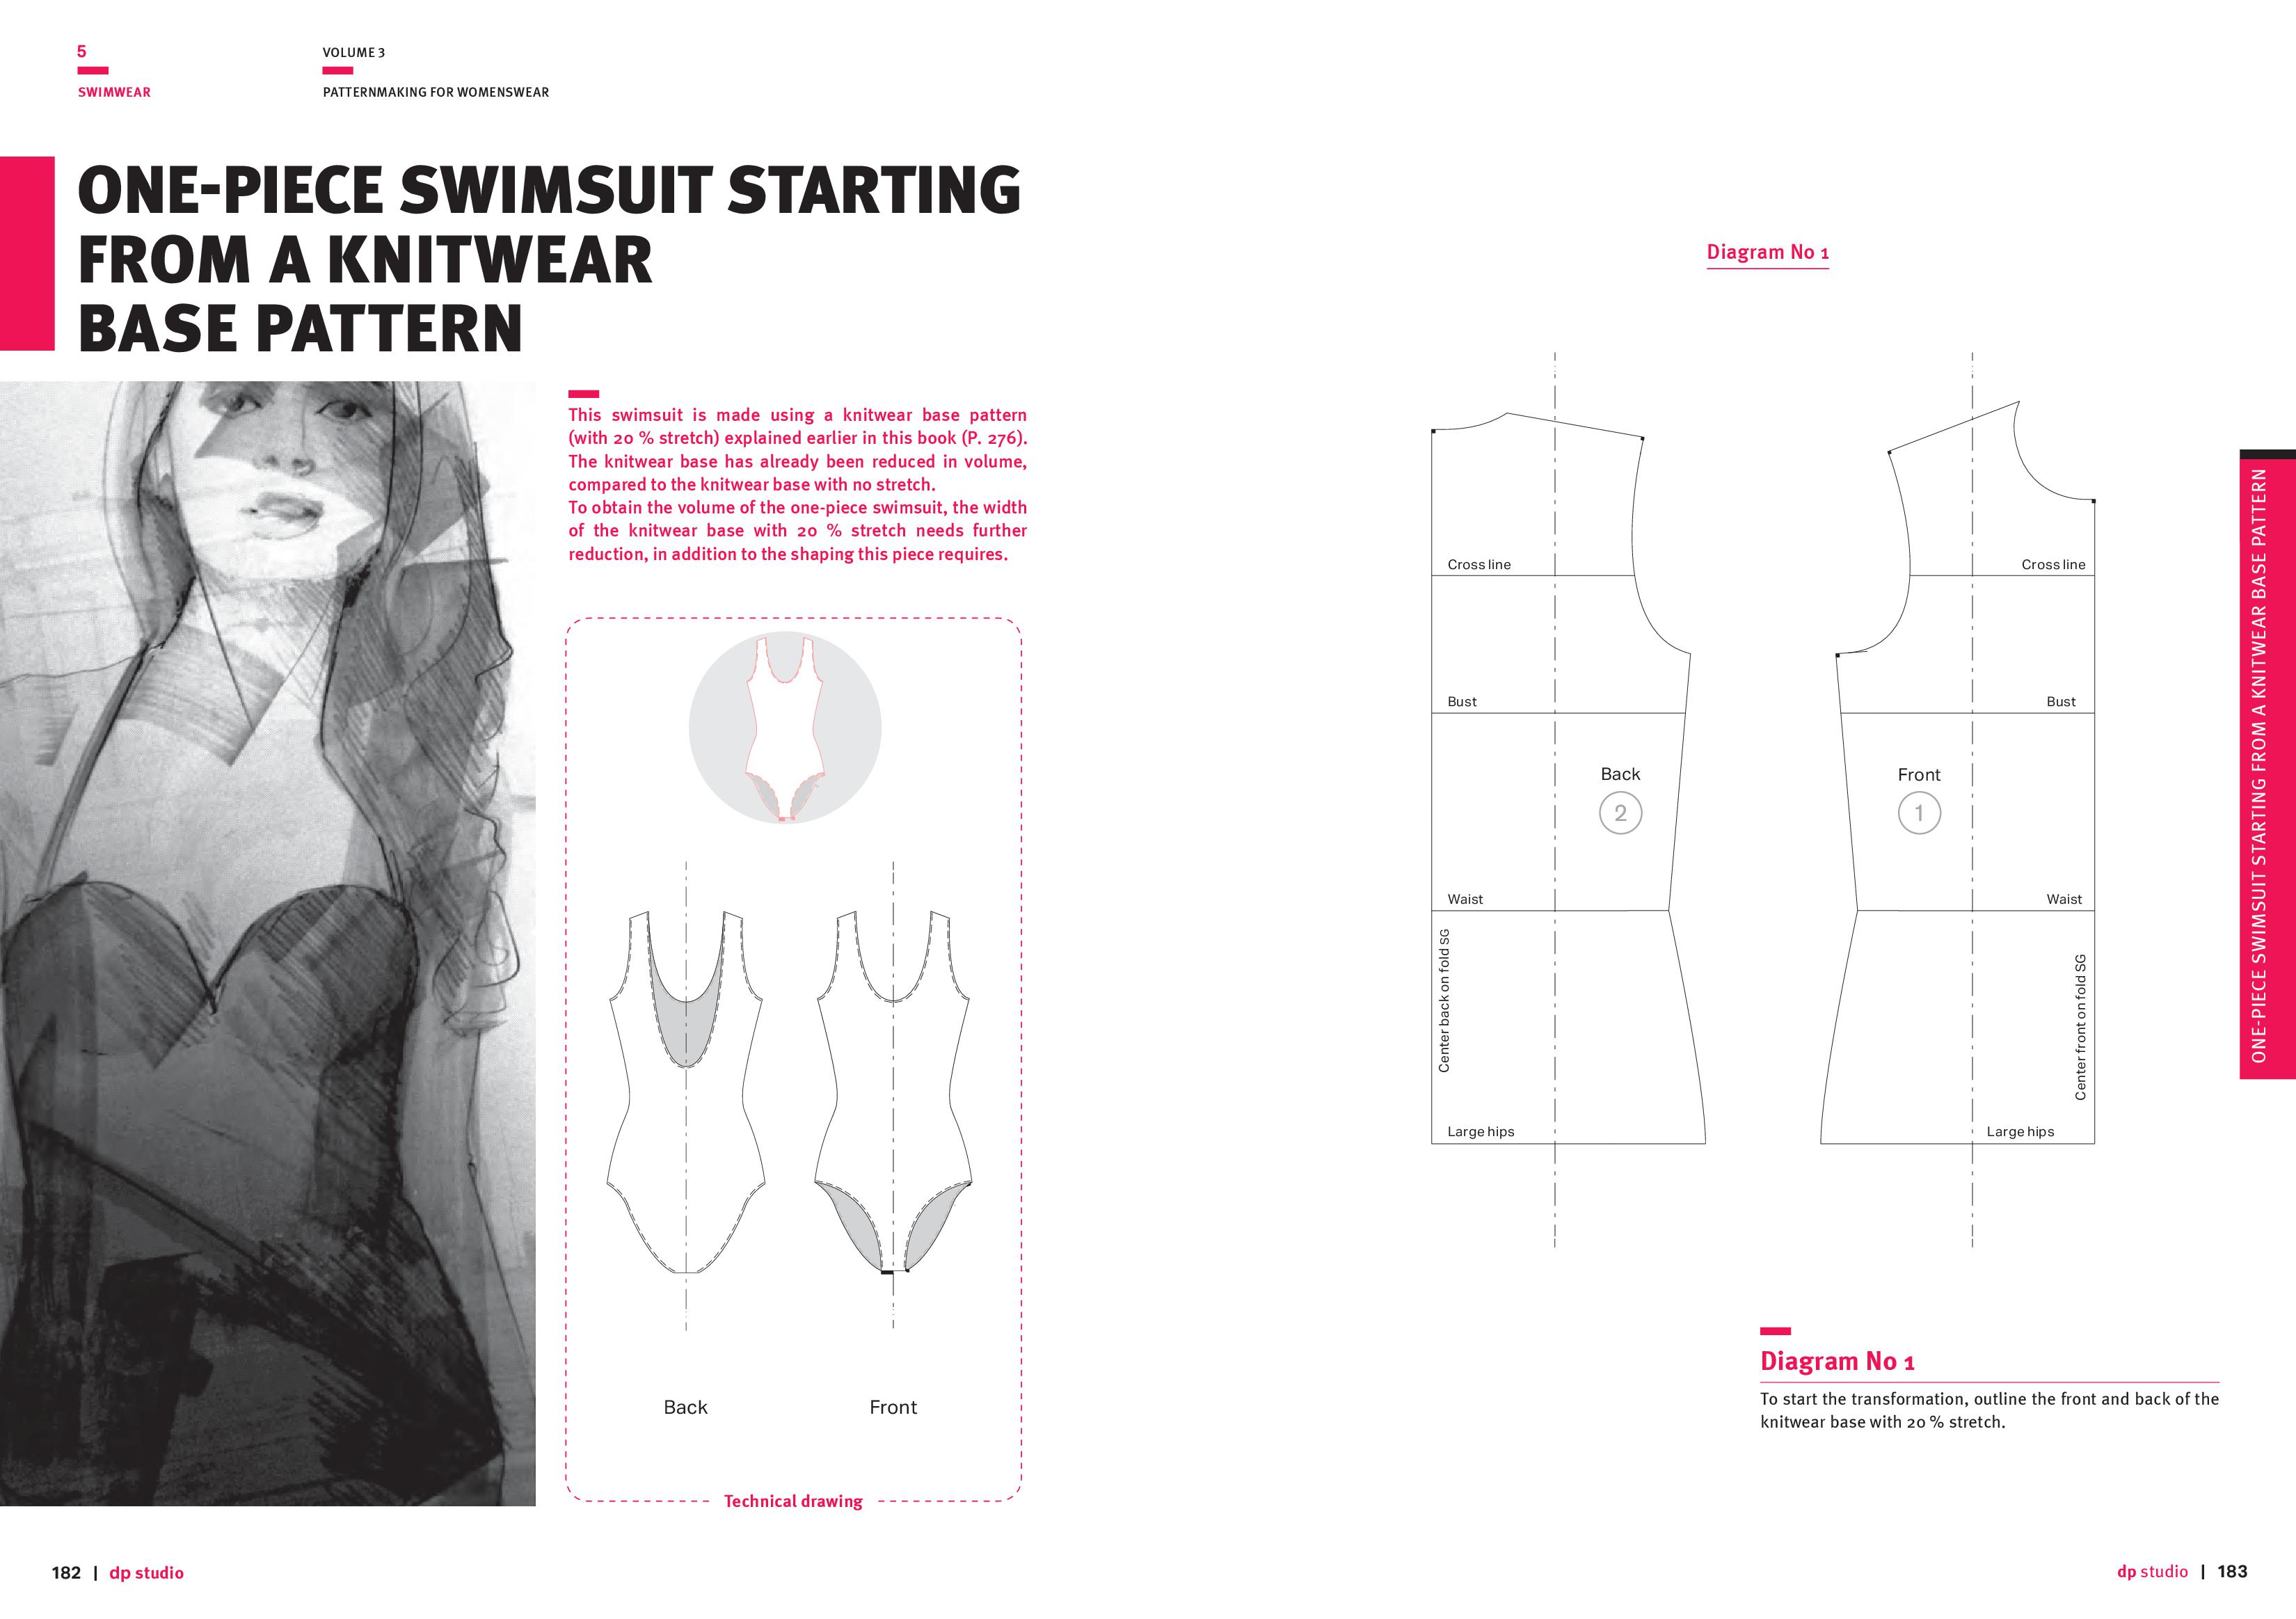 Patternmaking for Womenswear, Vol 3